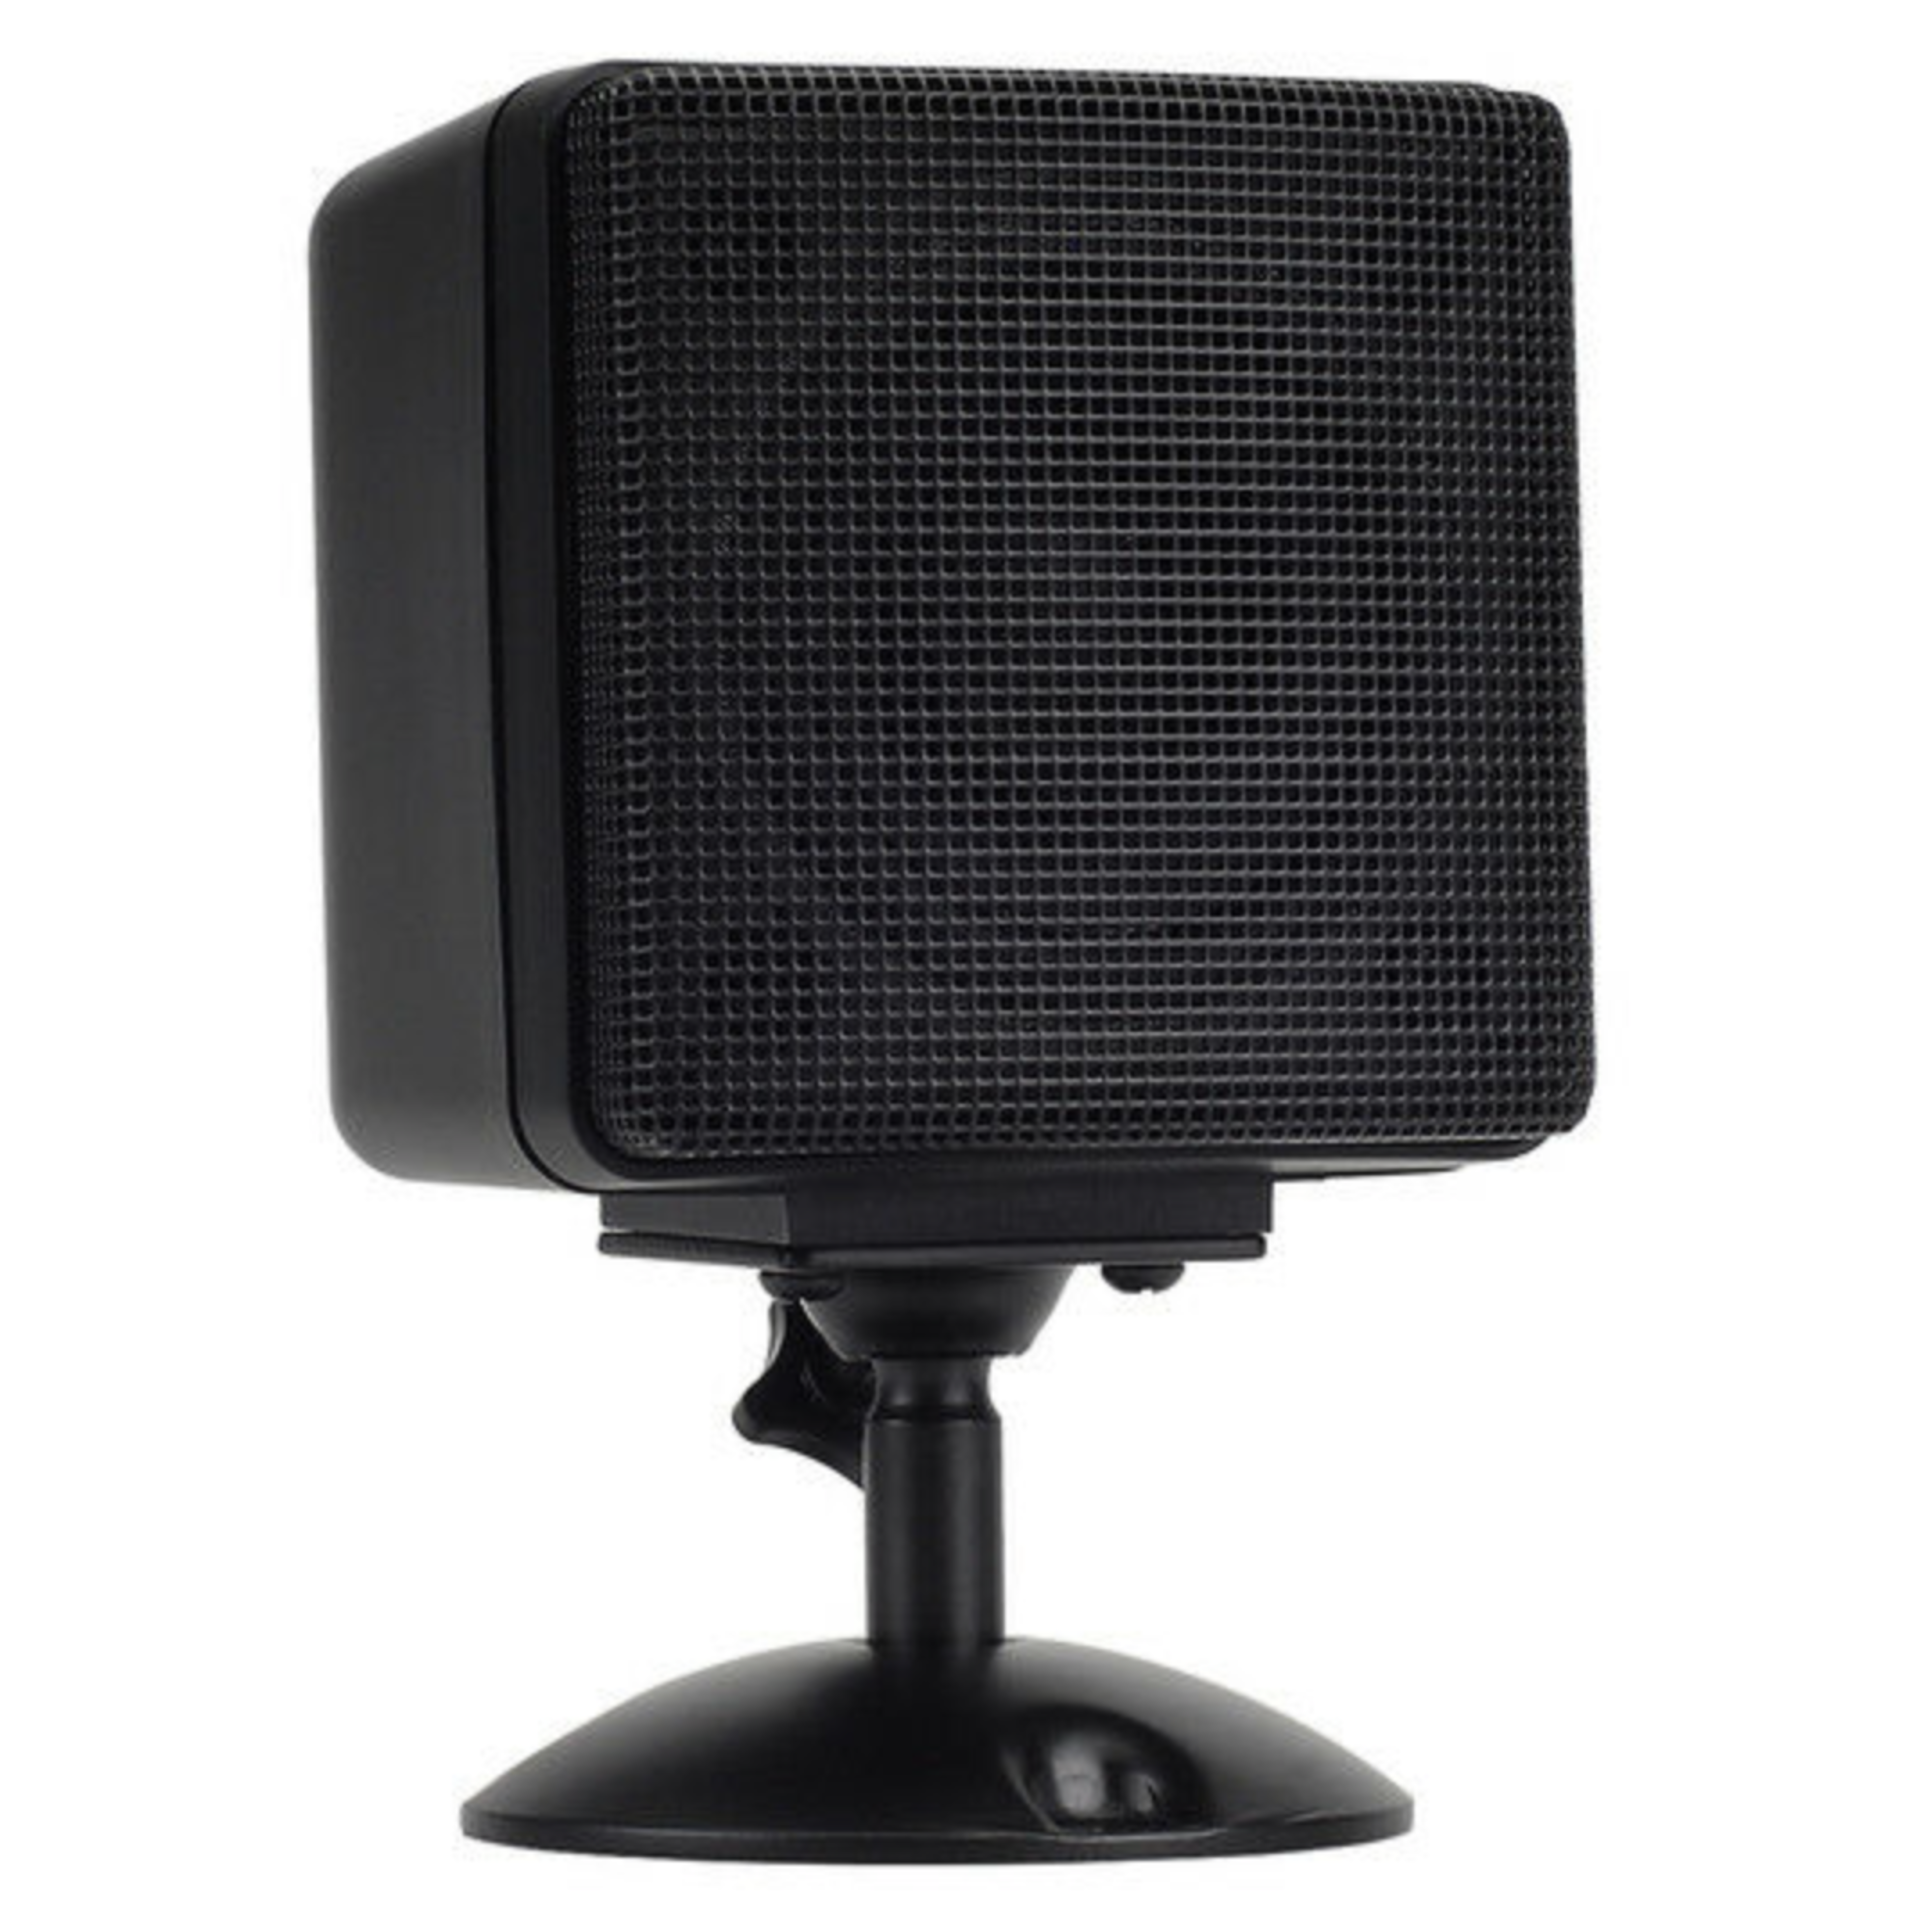 8 SINGLE SPEAKER BLACK SPEAKER W/ REMOVABLE PEDESTAL MODEL 26961 3" Satellite Speaker (Black)